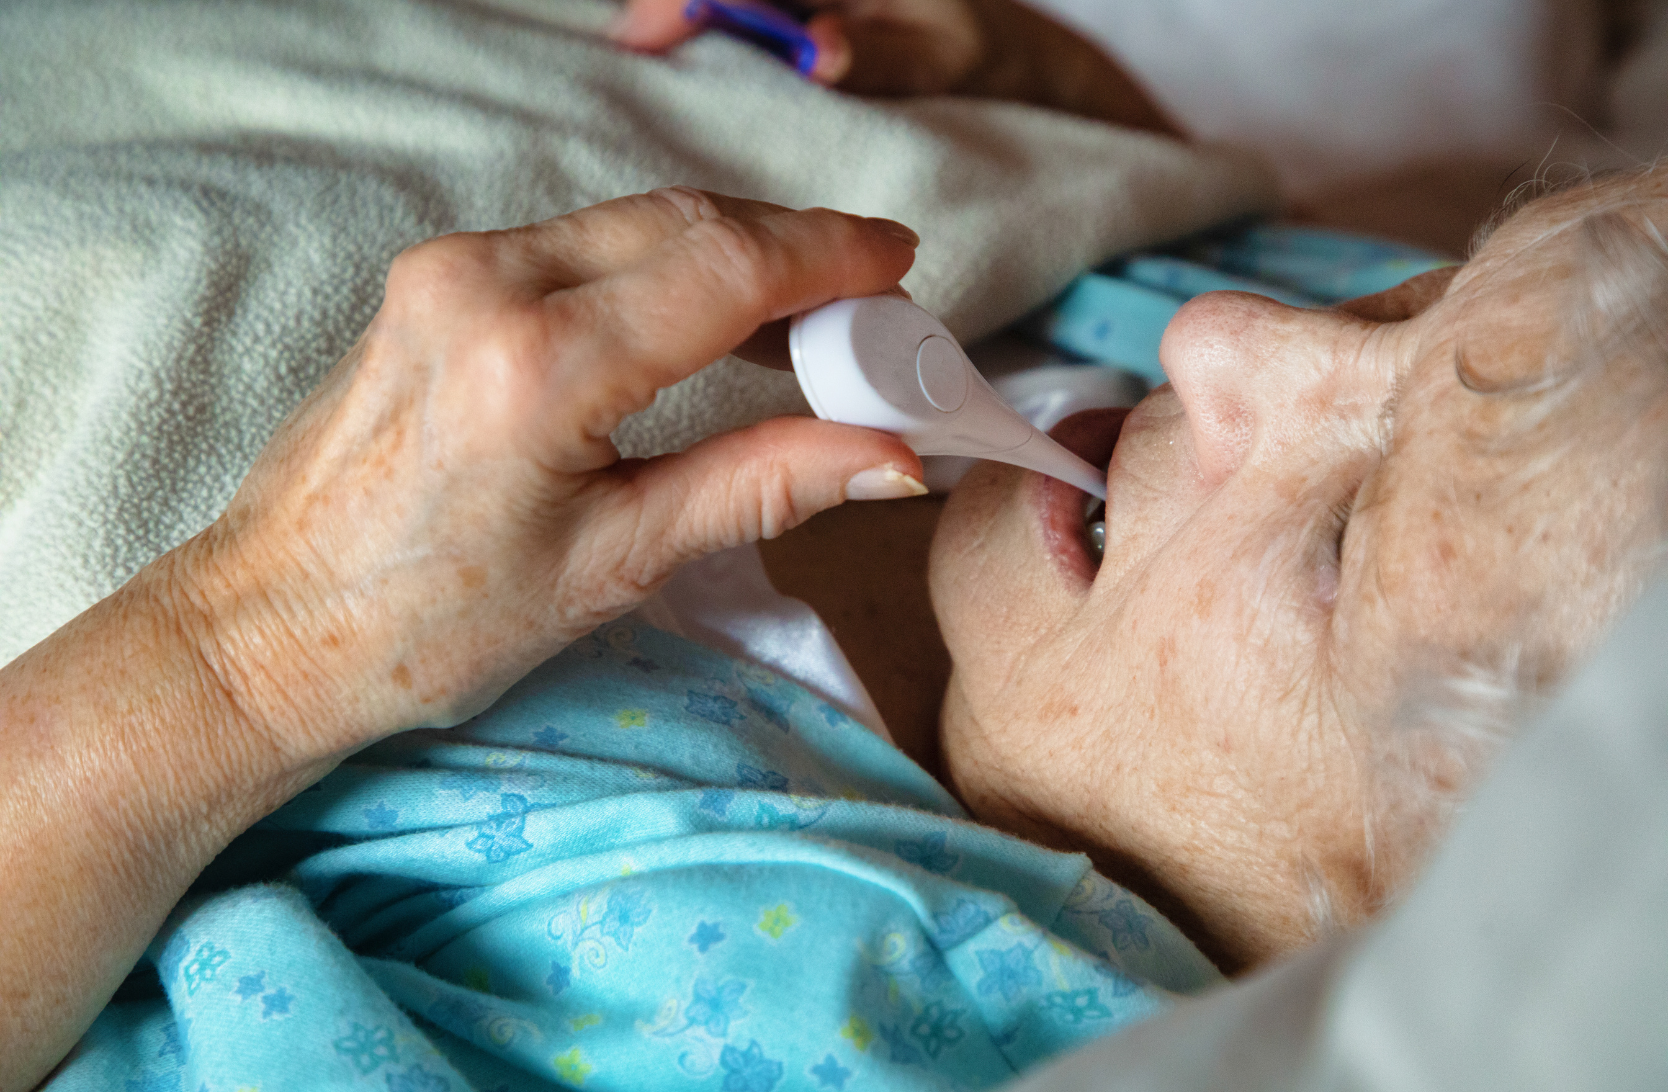 Elderly woman having her temperature taken in bed.